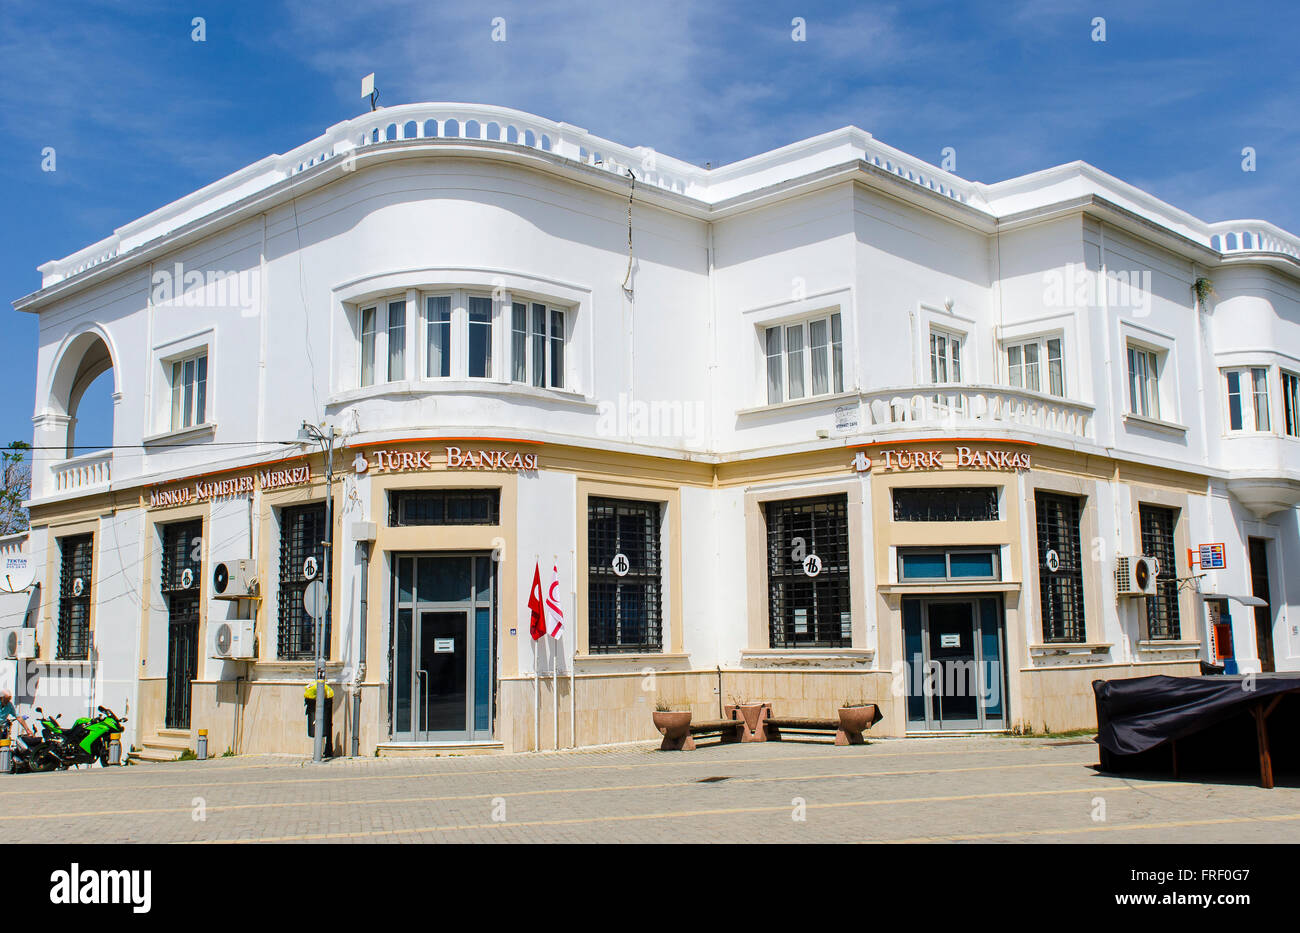 Sucursal del banco turco Turk Bankasi en la ciudad de Kyrenia, Norte de Chipre. Foto de stock